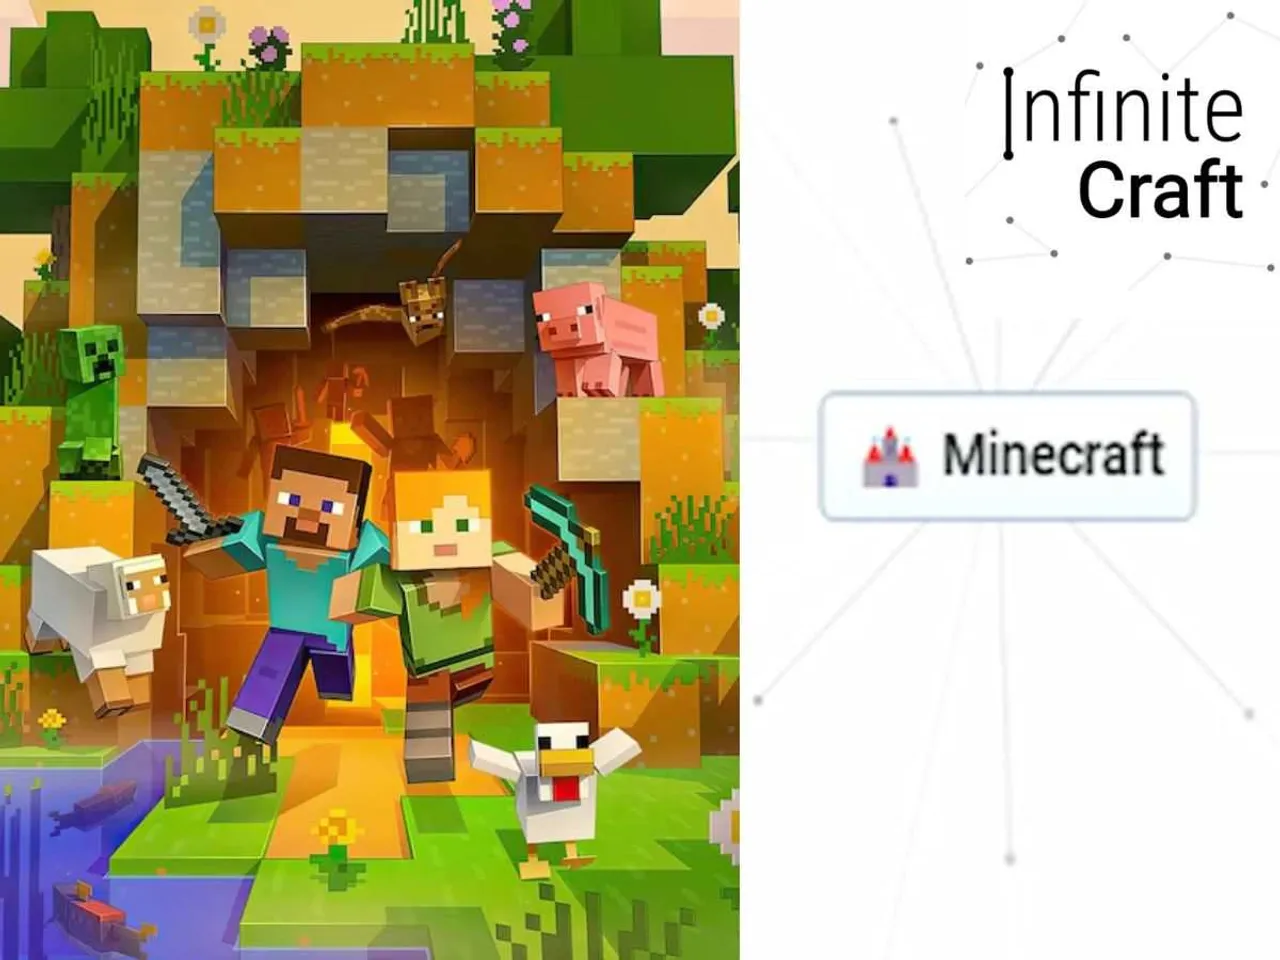 Minecraft in Infinite Craft